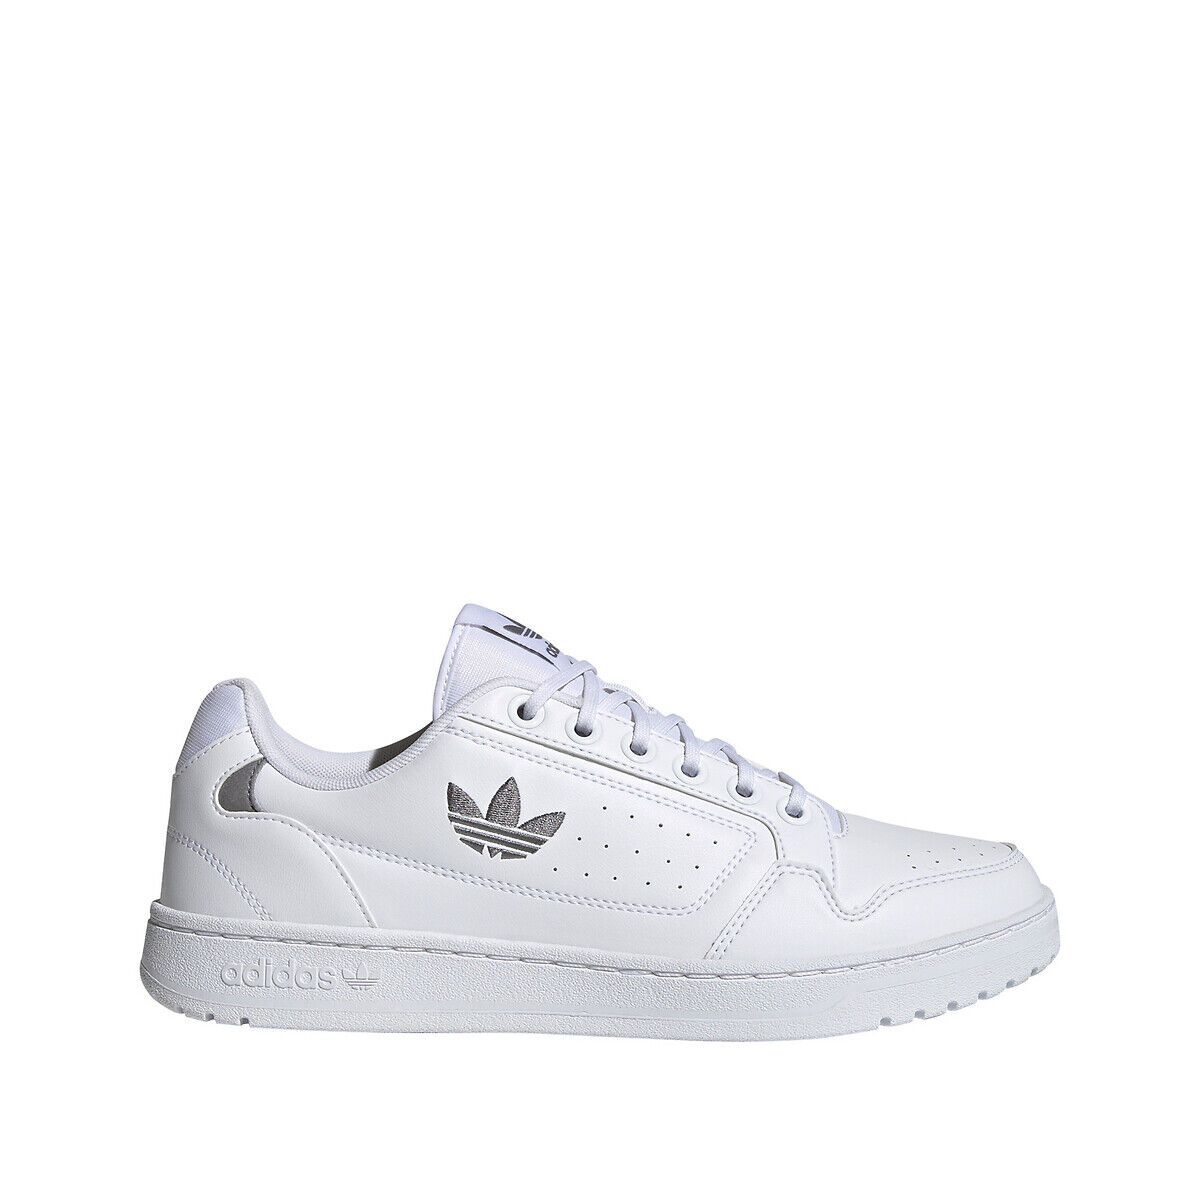 Adidas Originals Sapatilhas Ny 92   Branco